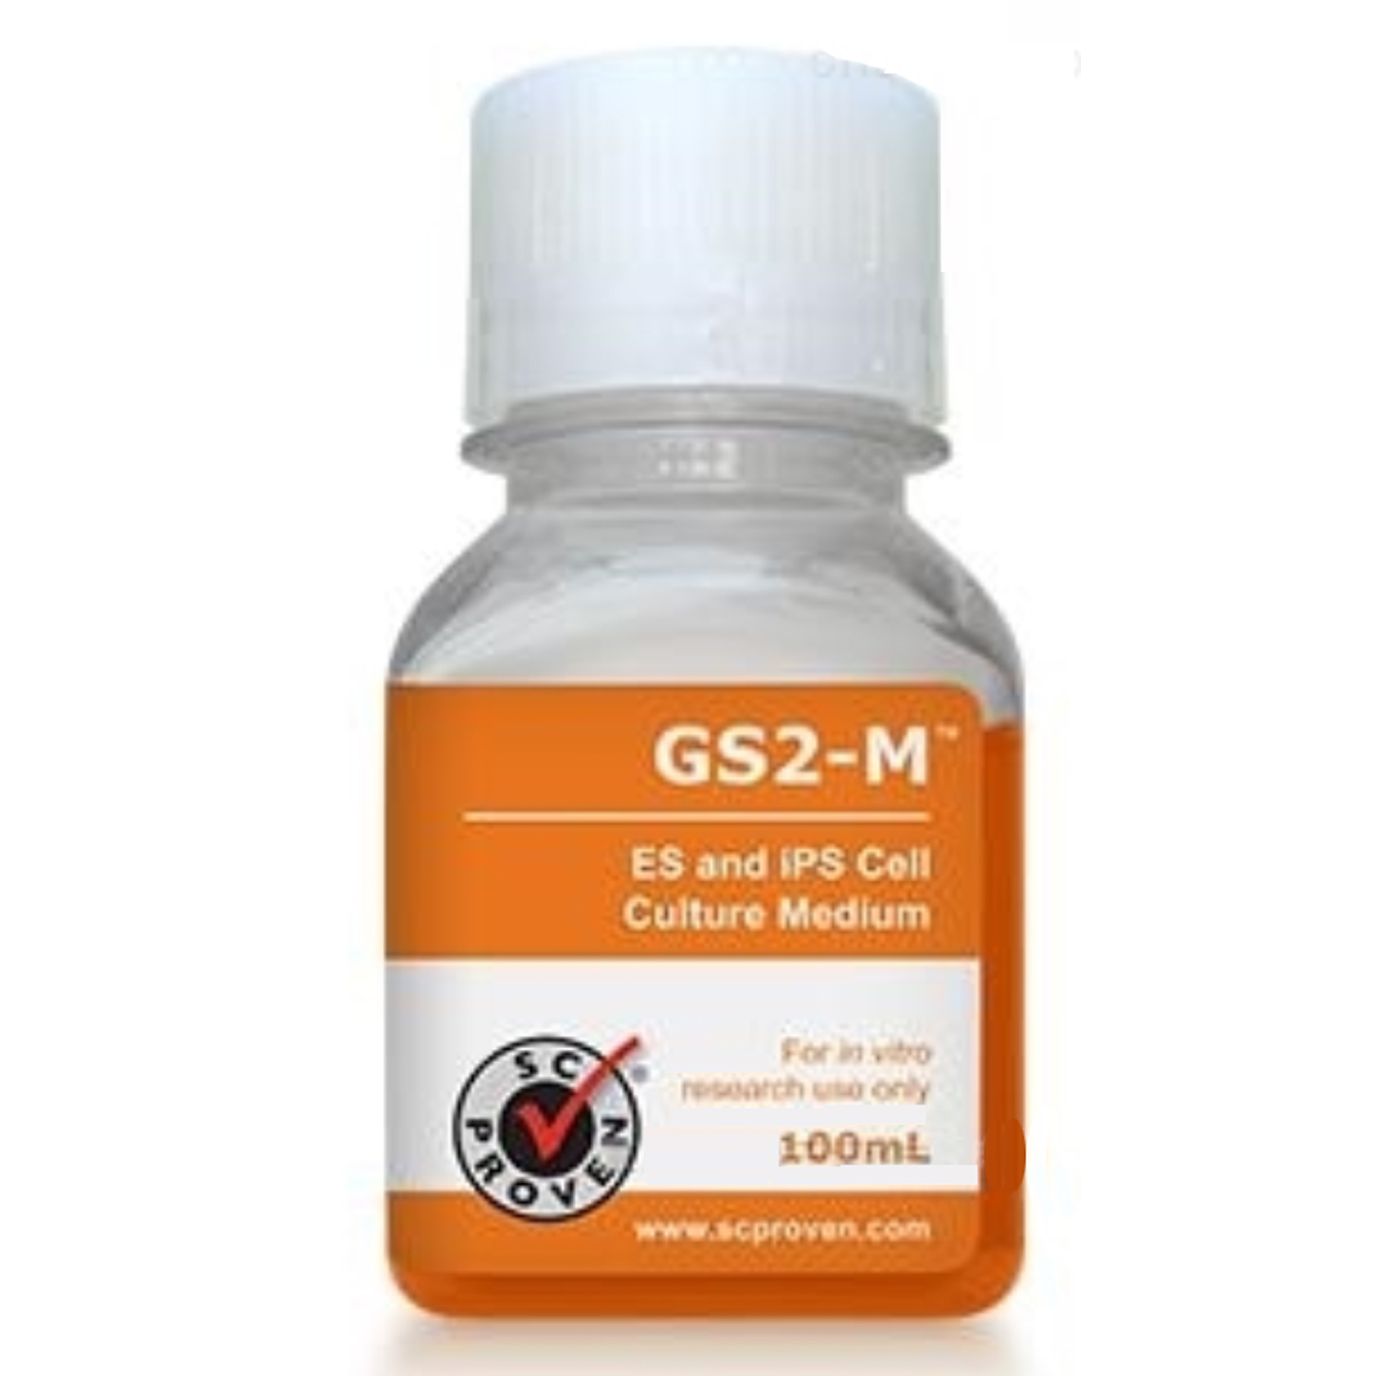 CellArtis Y40030 GS2 M小鼠iPS/ES干细胞无血清培养基